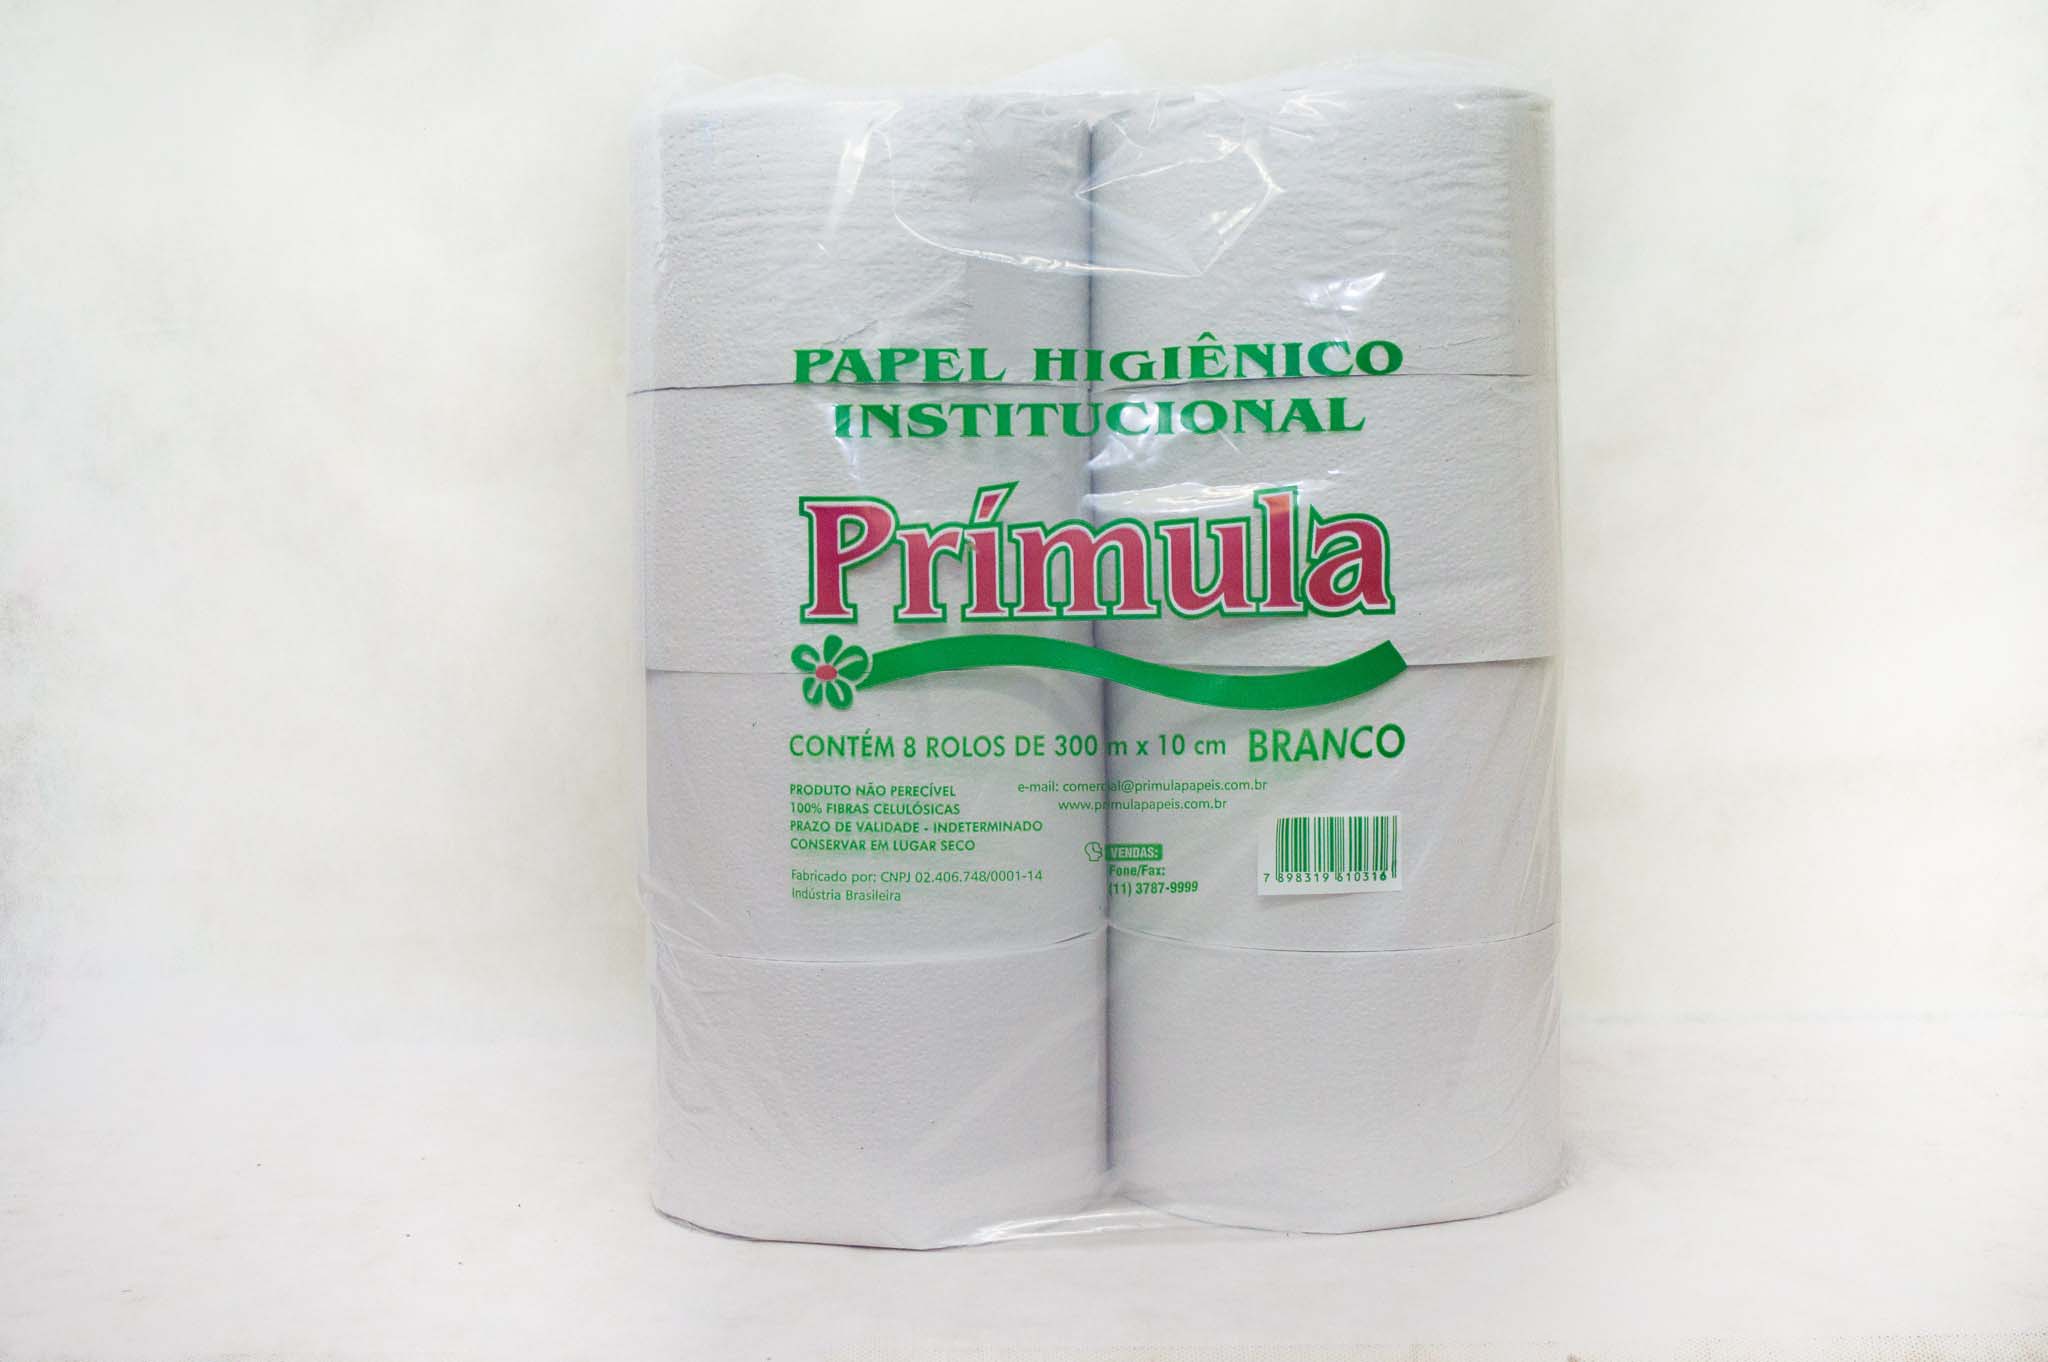 Distribuidores de papel higiênico institucional